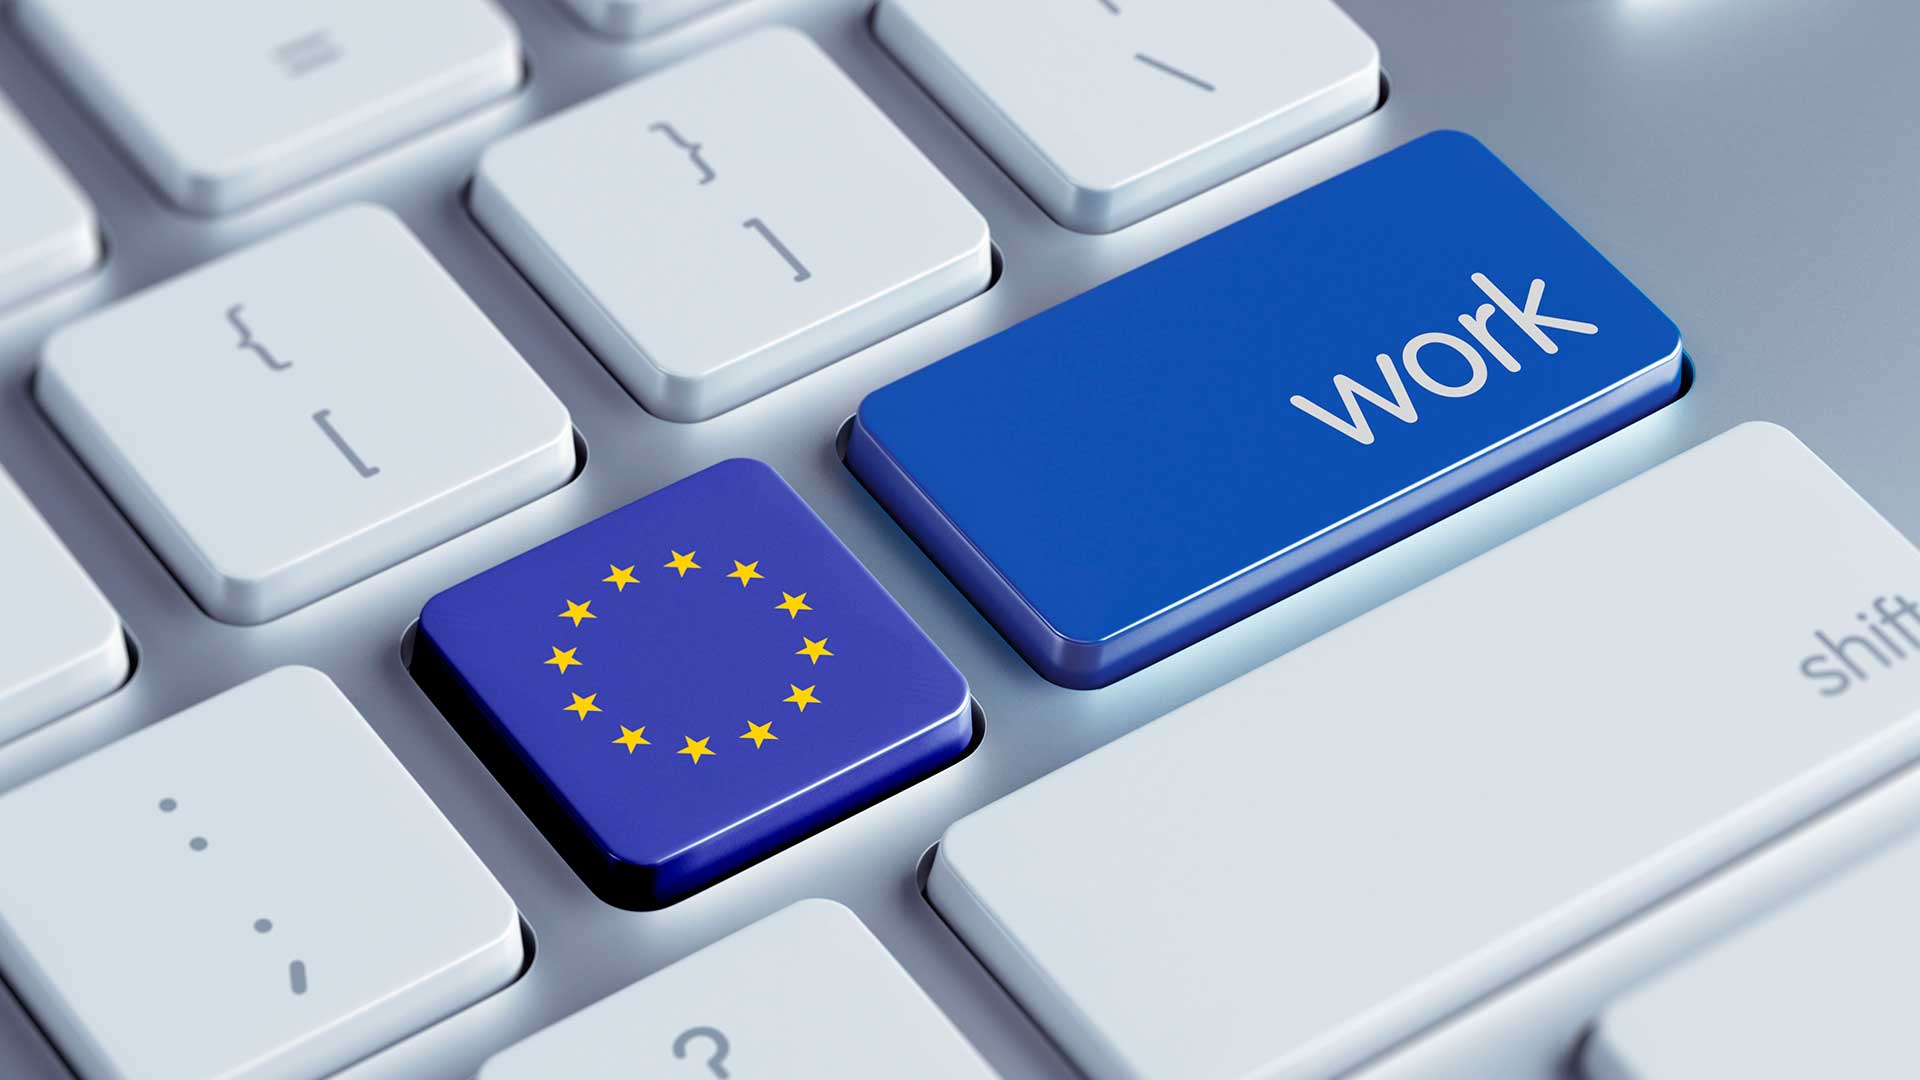 Значок ЕС на клавиатуре свидетельствует о поиске работы в ЕС через интернет